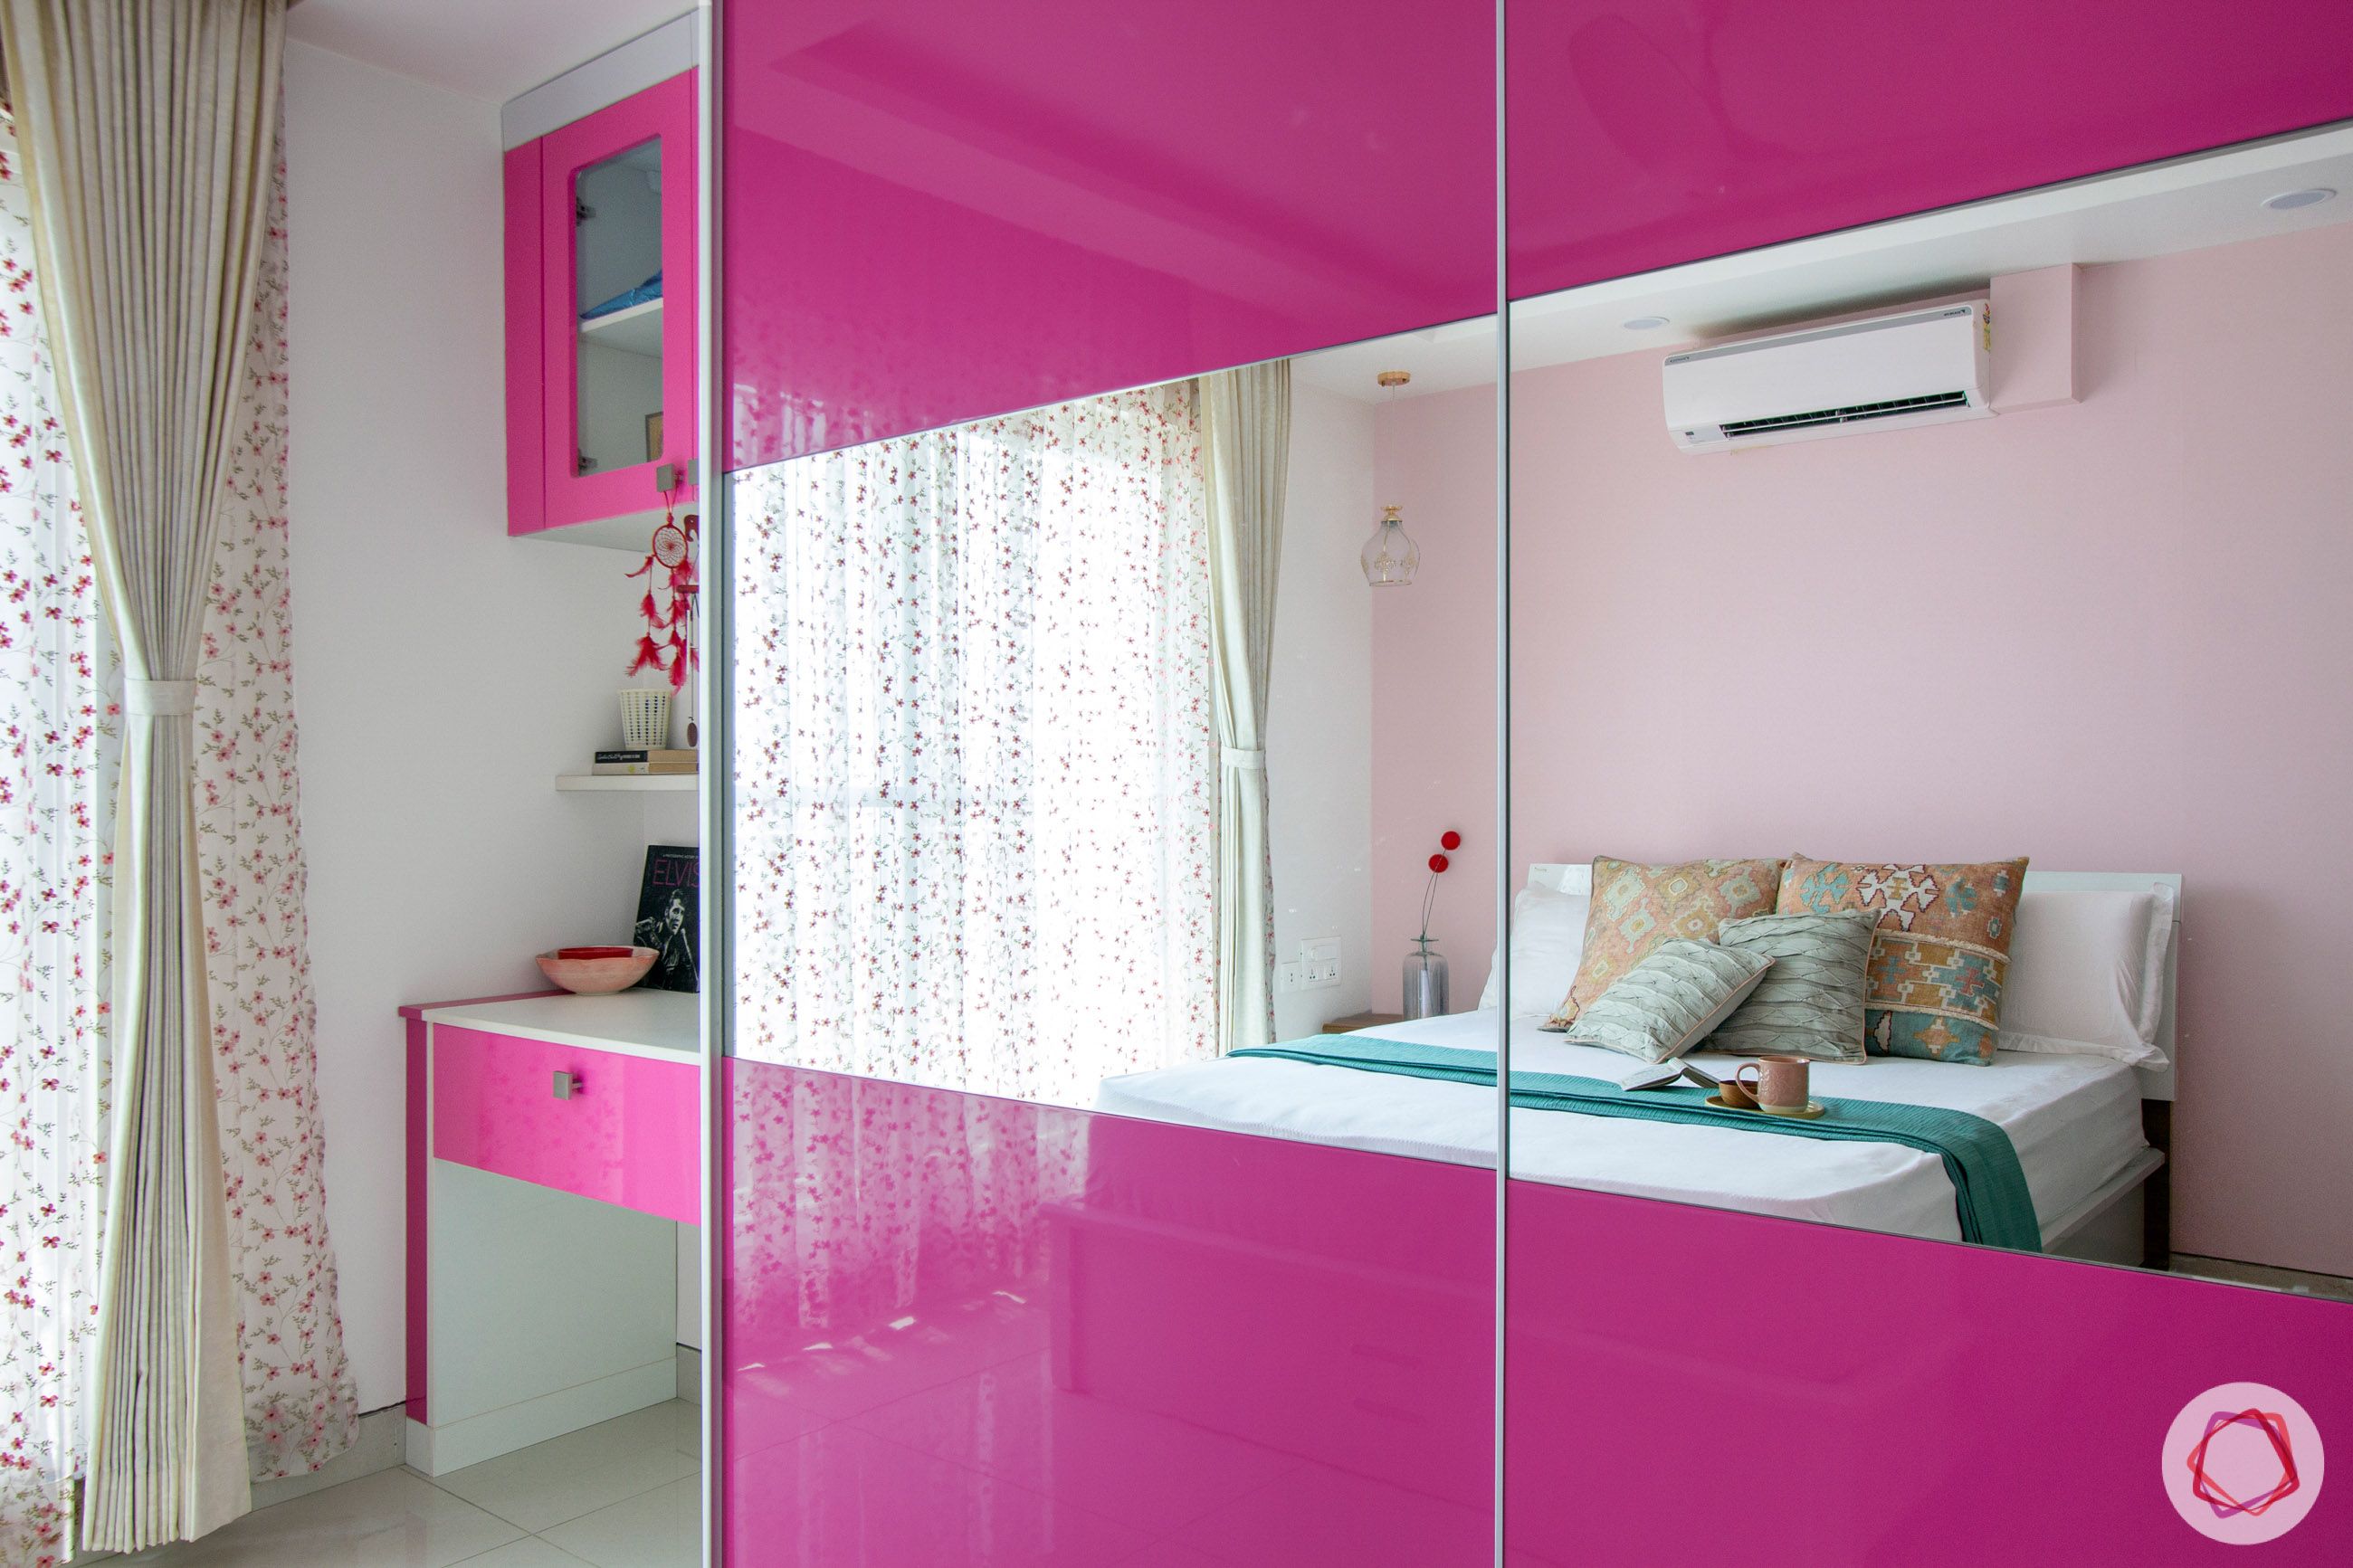 snn-raj-grandeur-girls bedroom-mirror panel